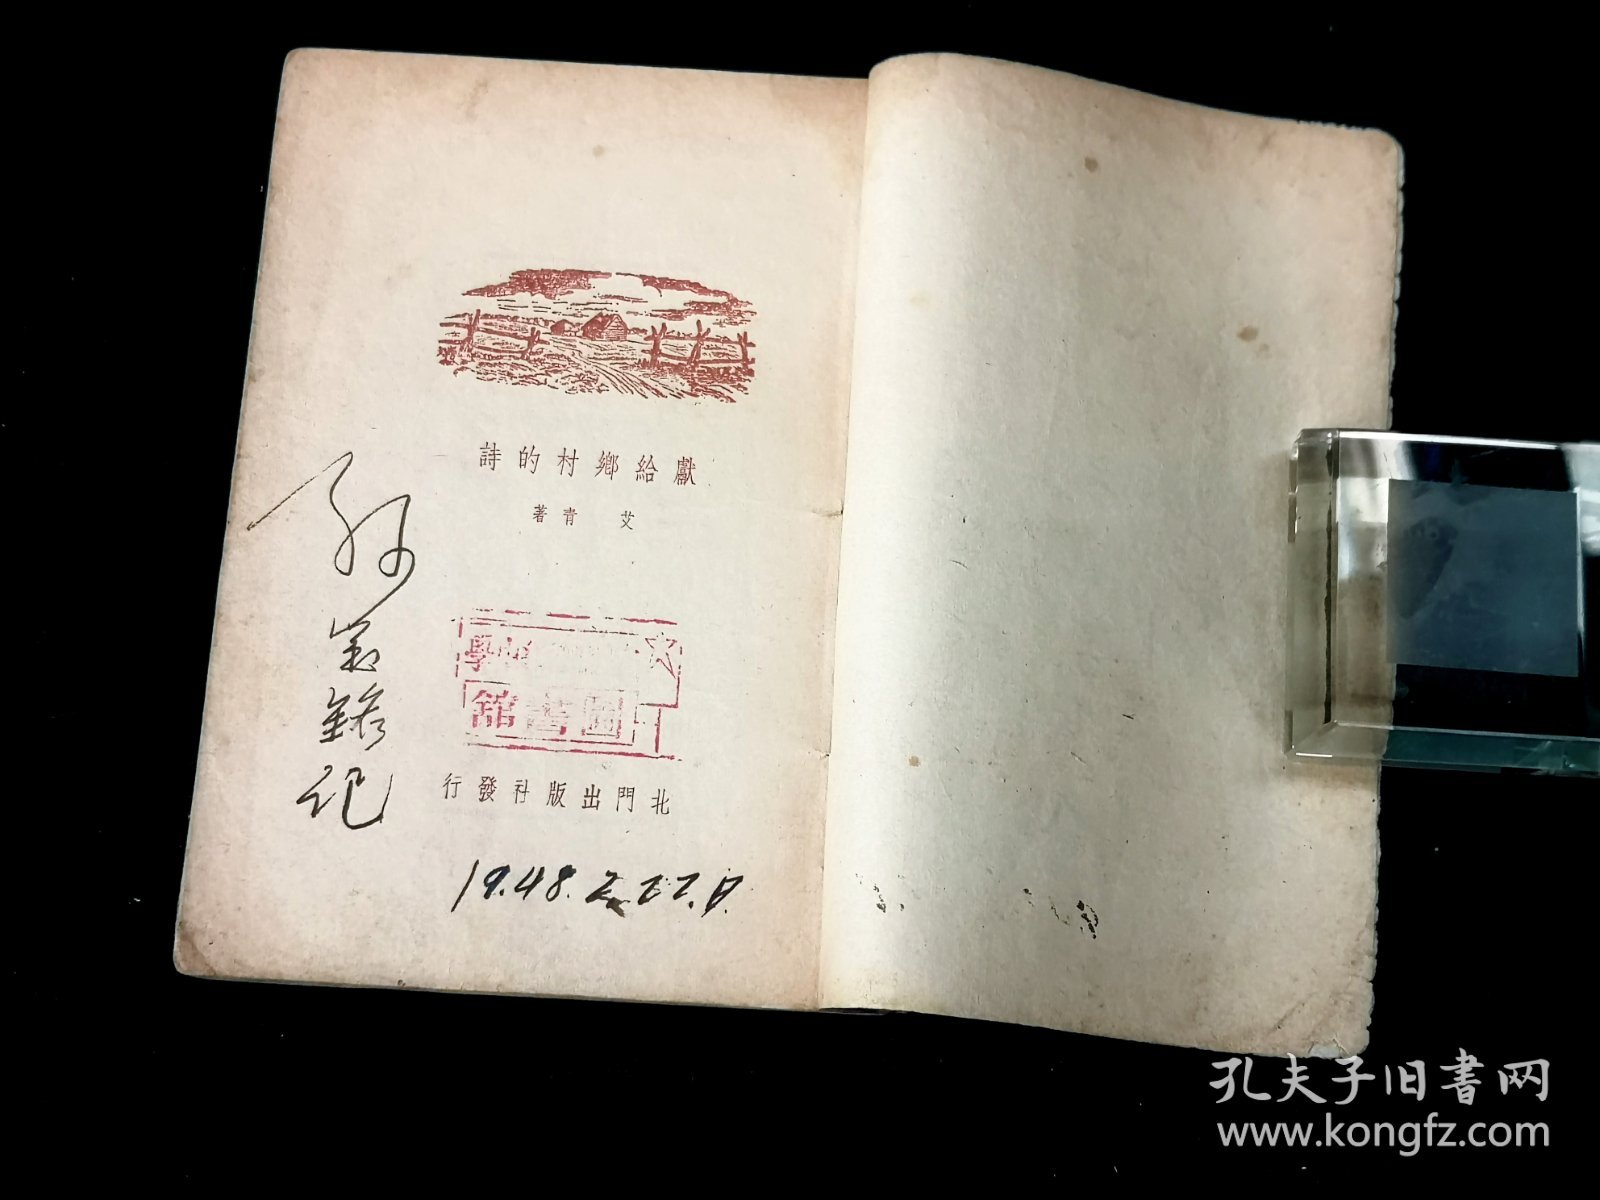 艾青诗集 ——《献给乡村的诗》  ：民国三十六年 北门出版社 出版  稀见本